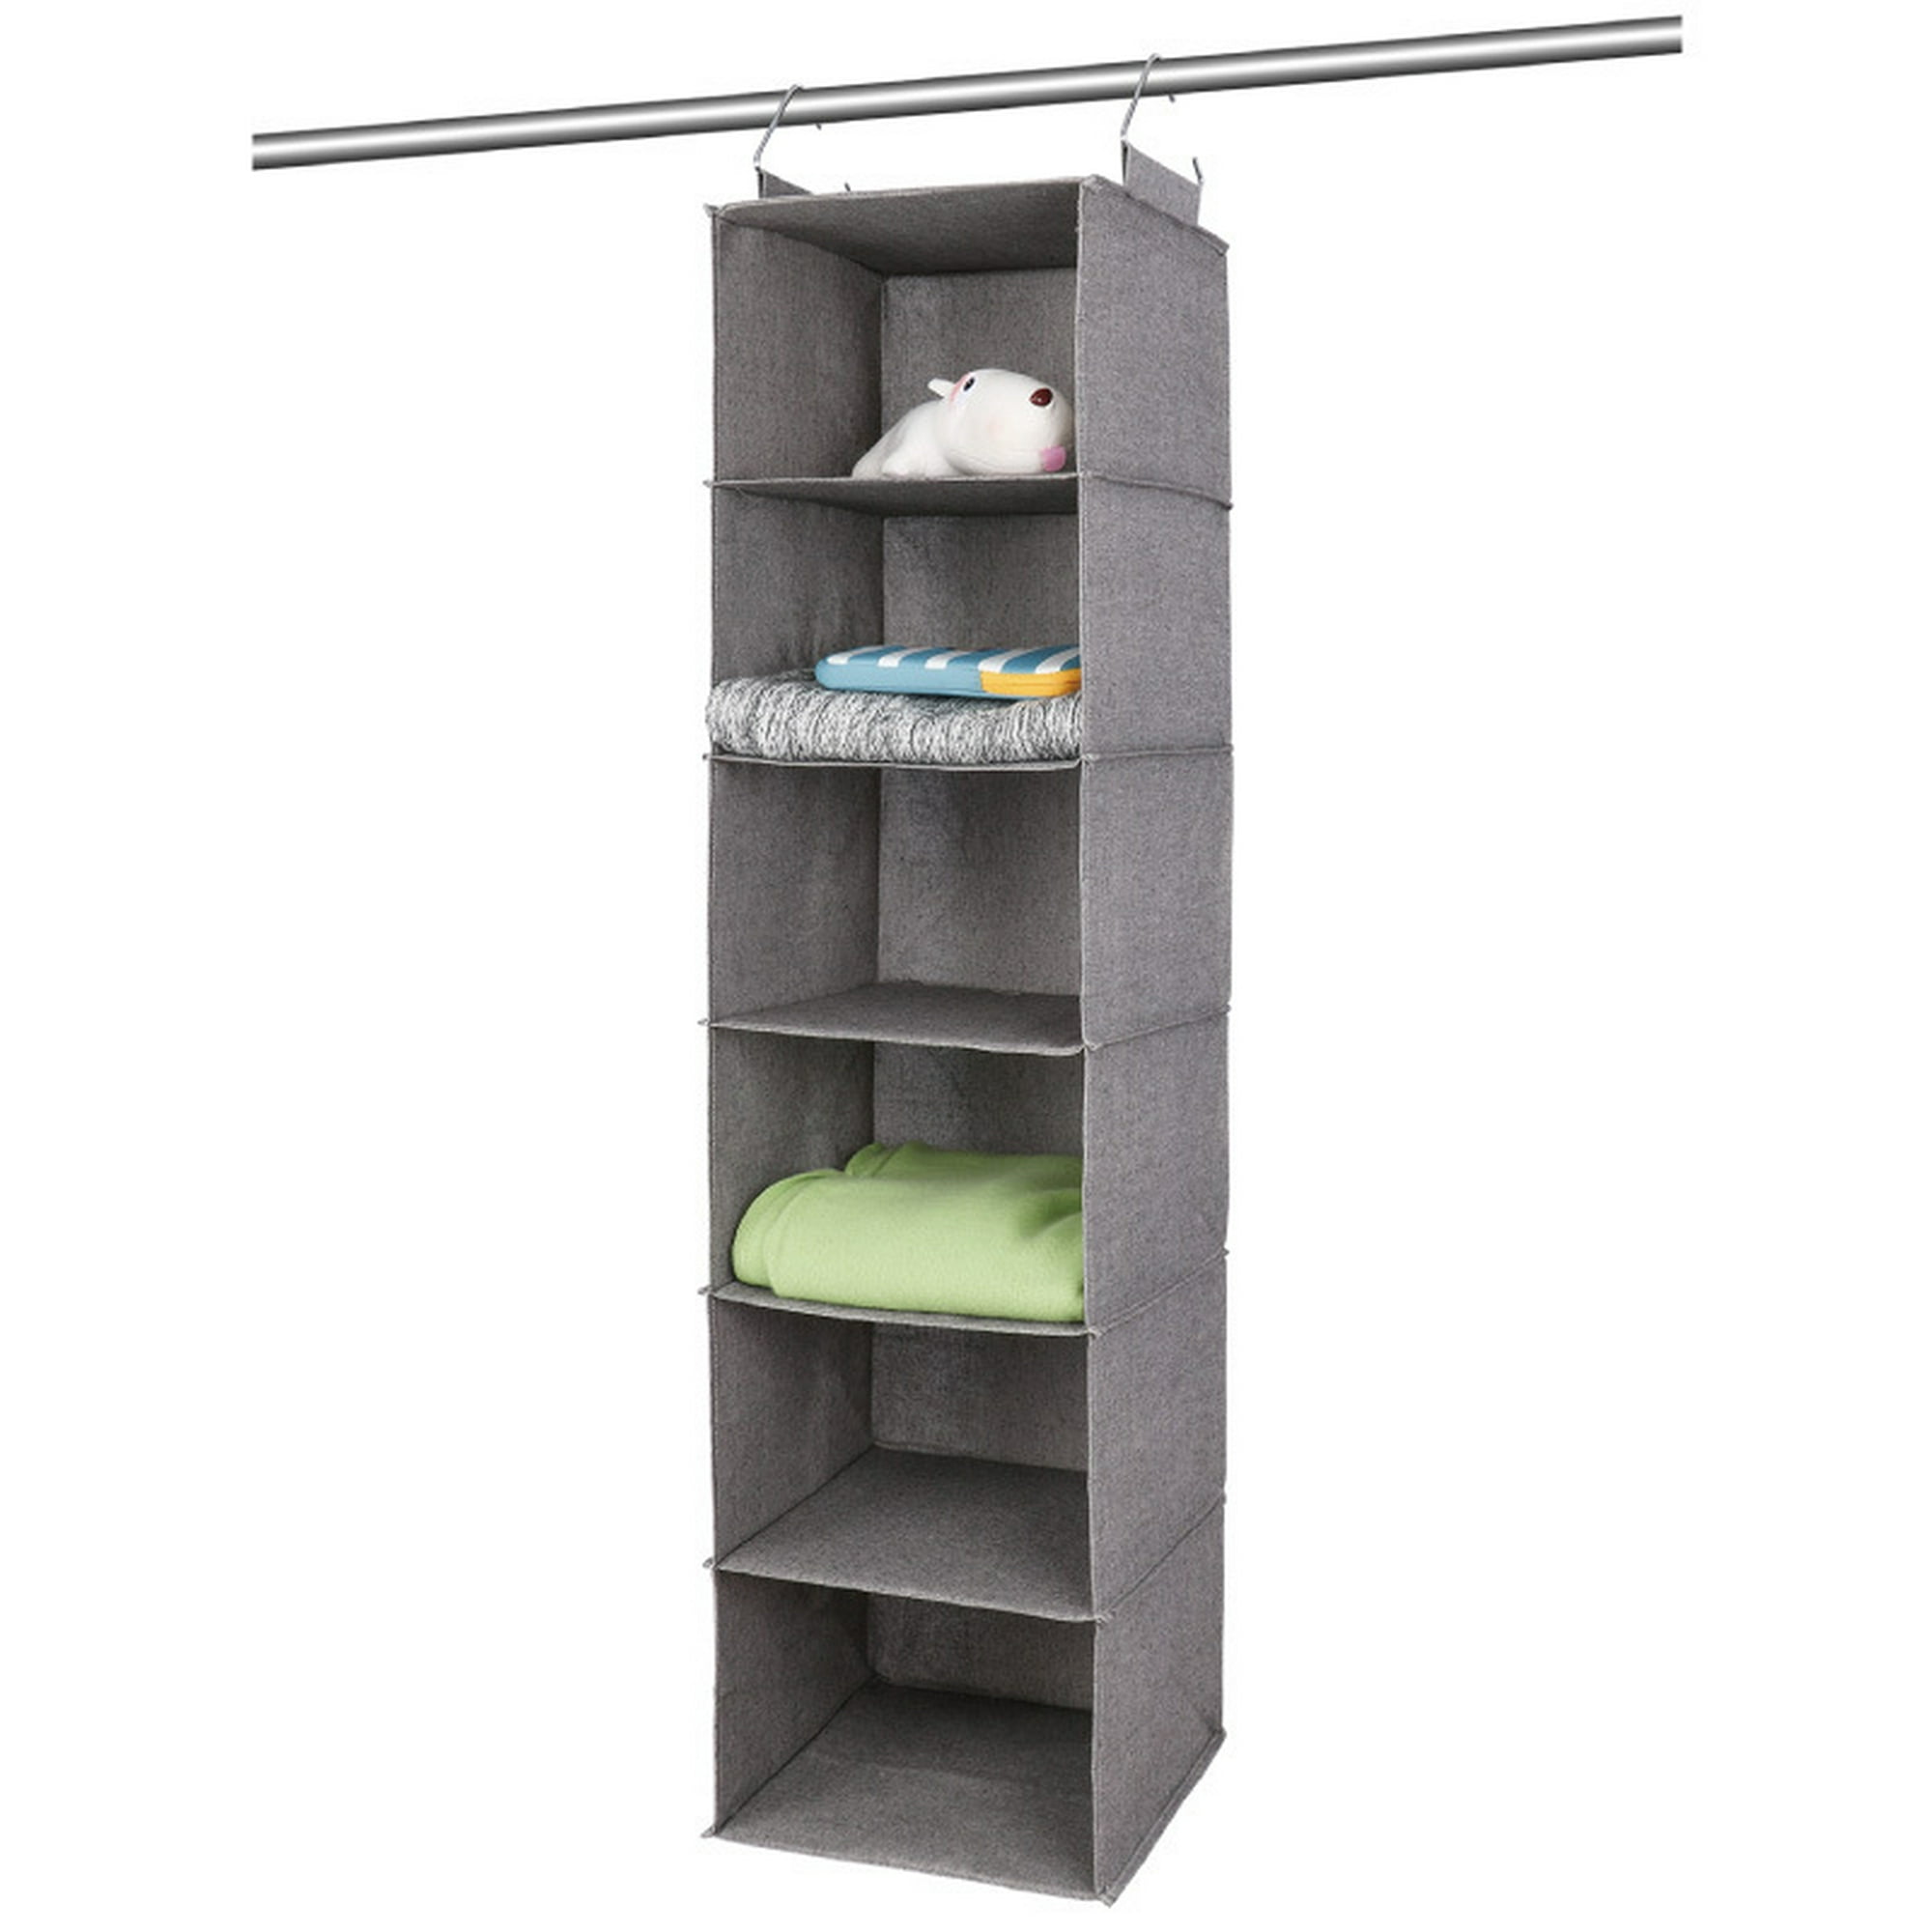 Estante de 6 niveles, Organizador colgante de closet, Estante colgante de  closet con 2 ganchos resistentes para almacenamiento, plegable (Color gris